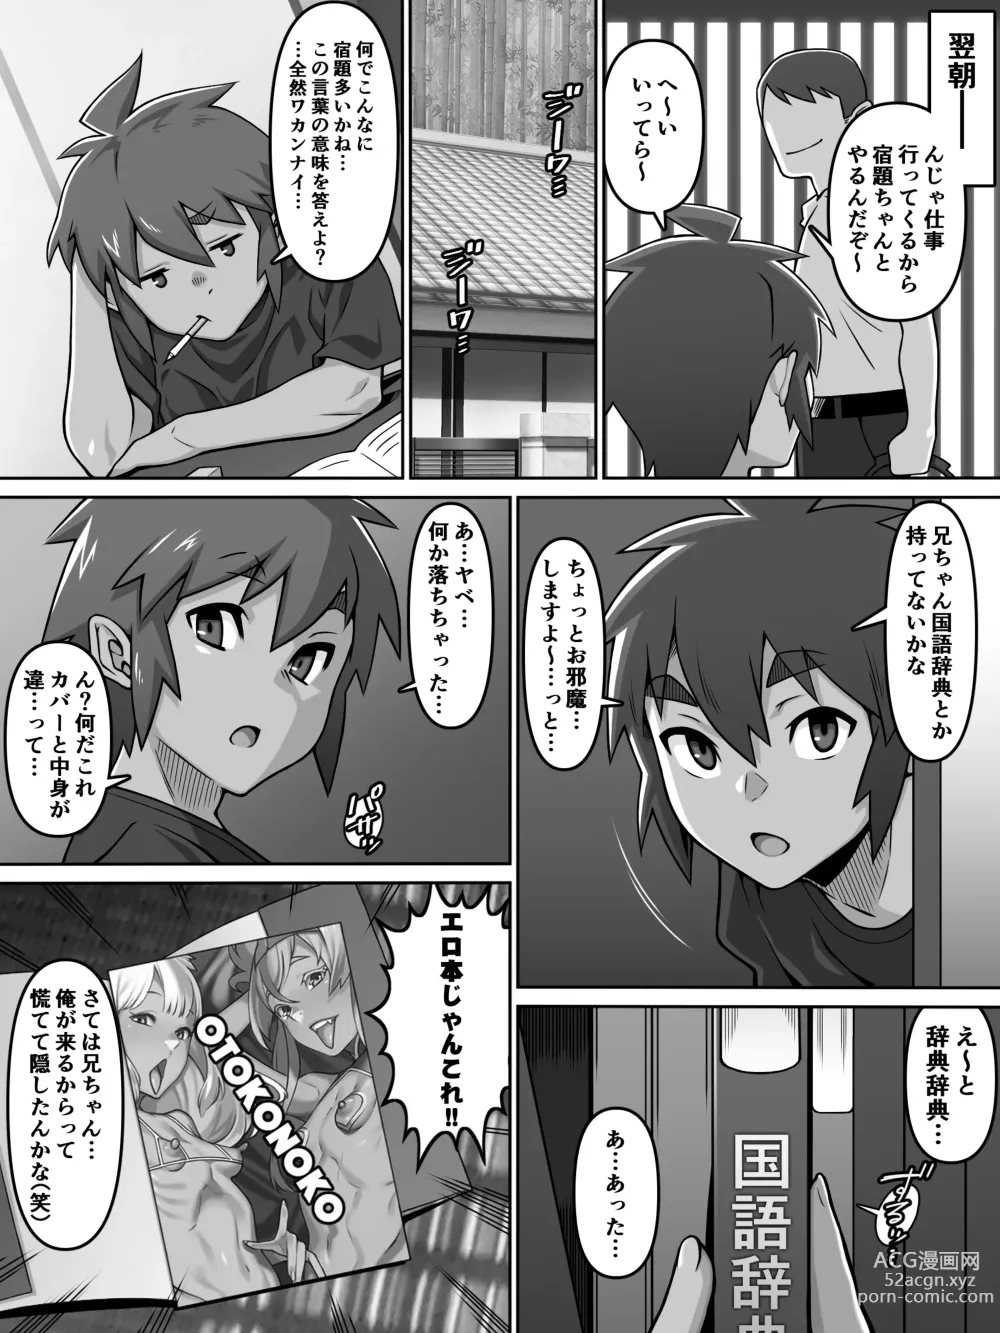 Page 6 of doujinshi Oi Ai